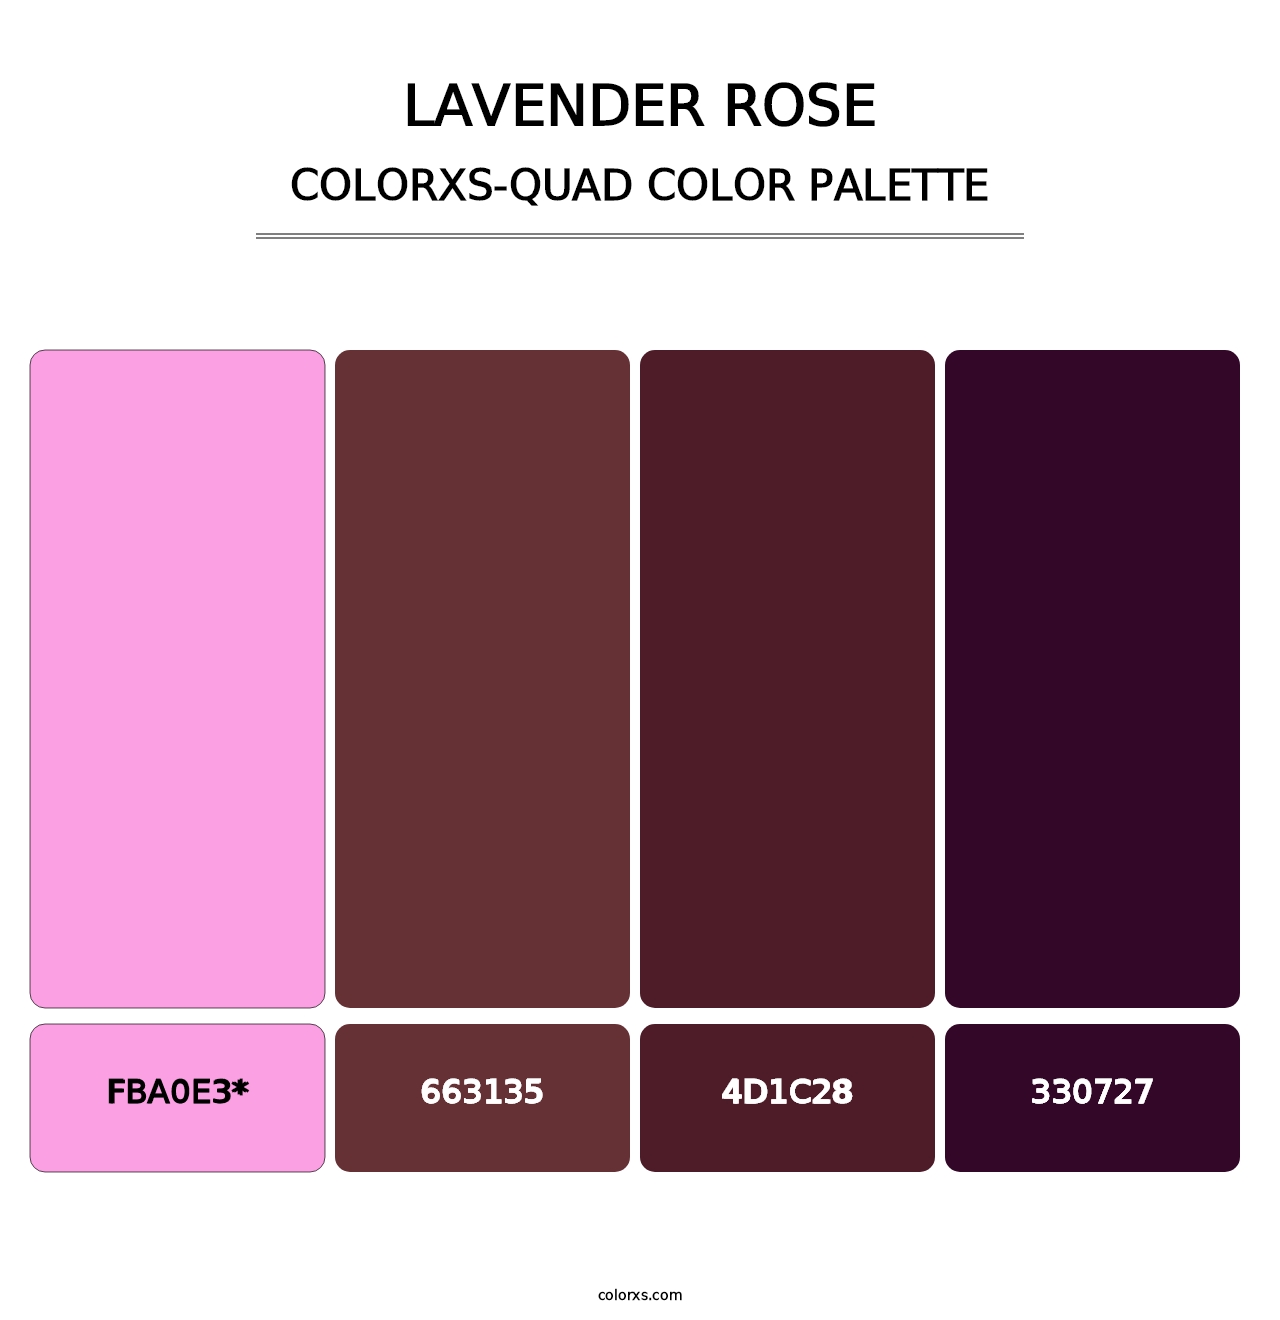 Lavender Rose - Colorxs Quad Palette